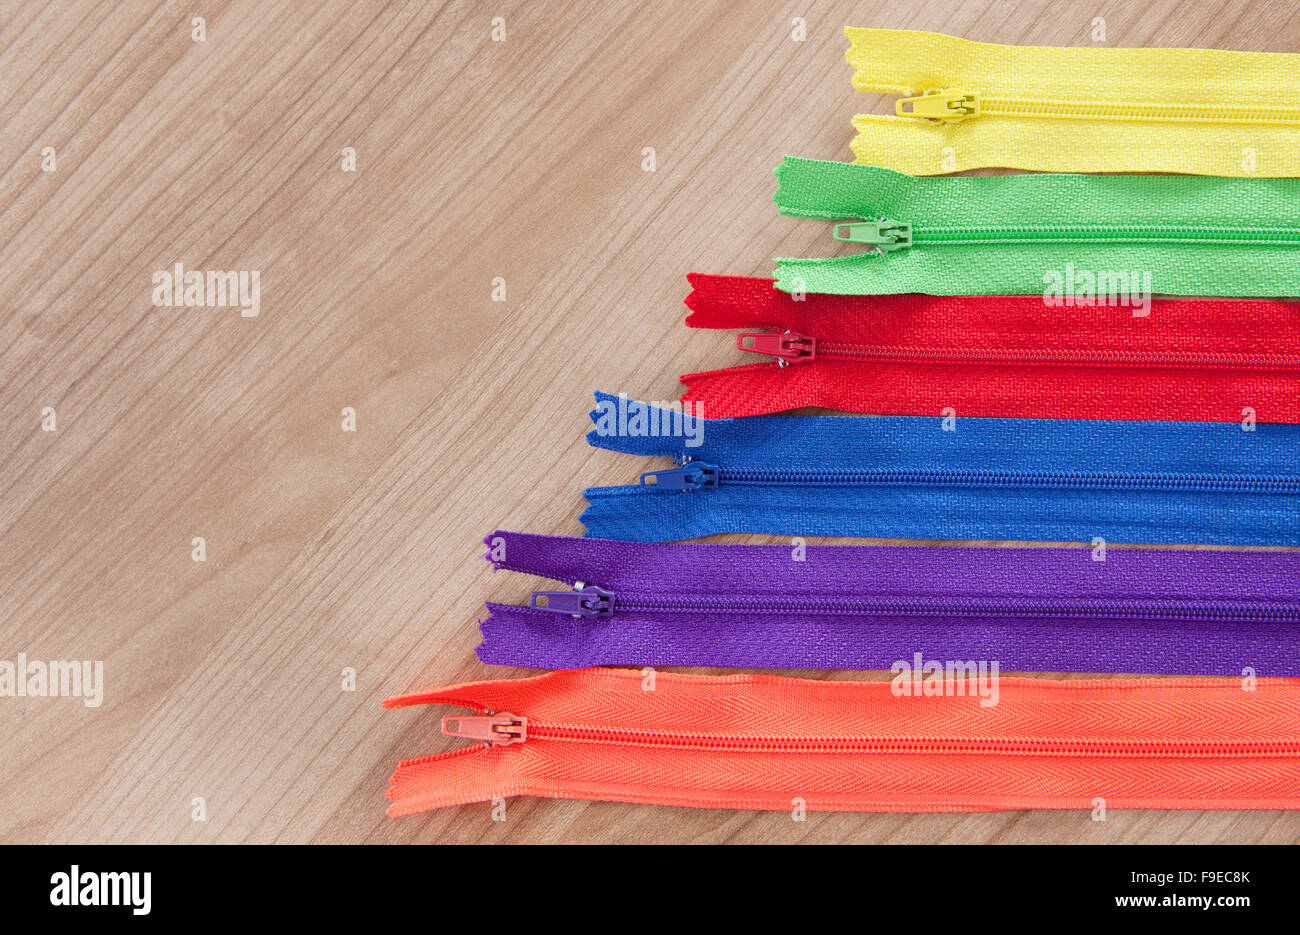 Fermetures à glissière de couleur différente à l'avant de l'arrière-plan bois Banque D'Images